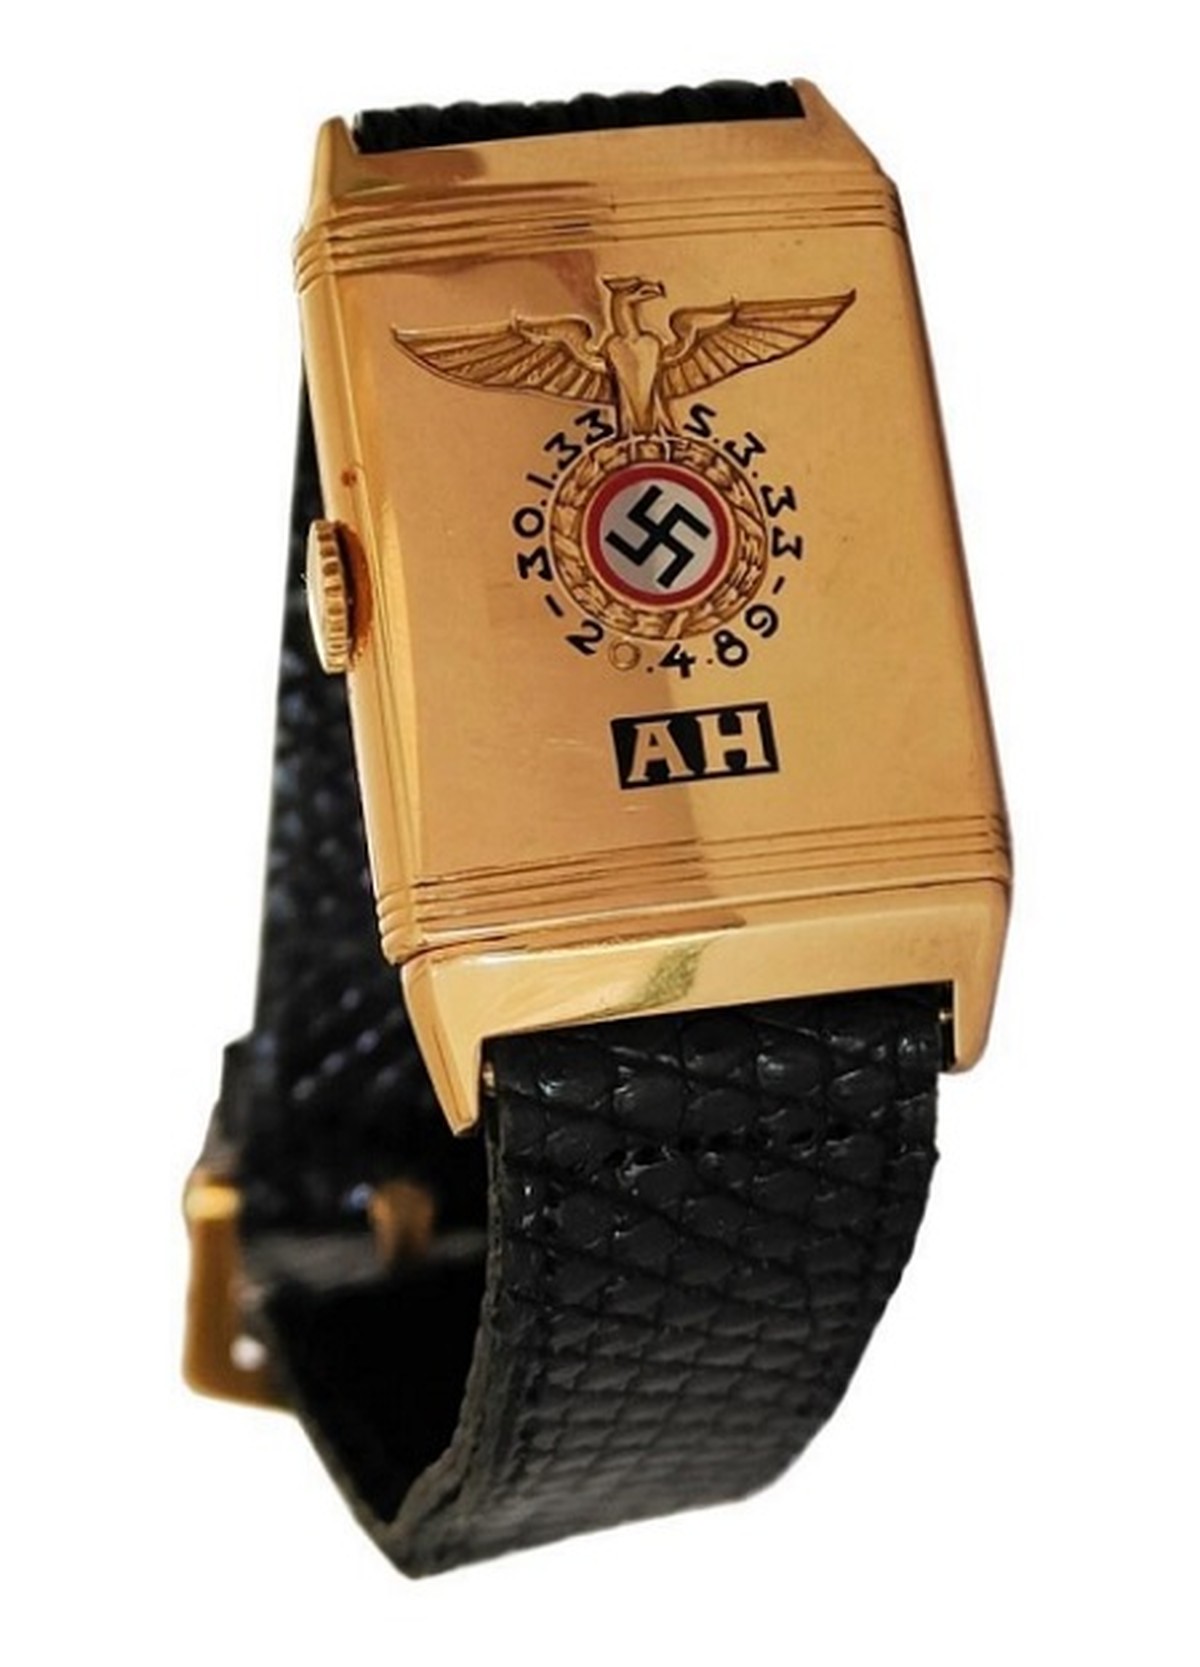 Relógio de Hitler é vendido por US$ 1,1 milhão em leilão controverso | Mundo